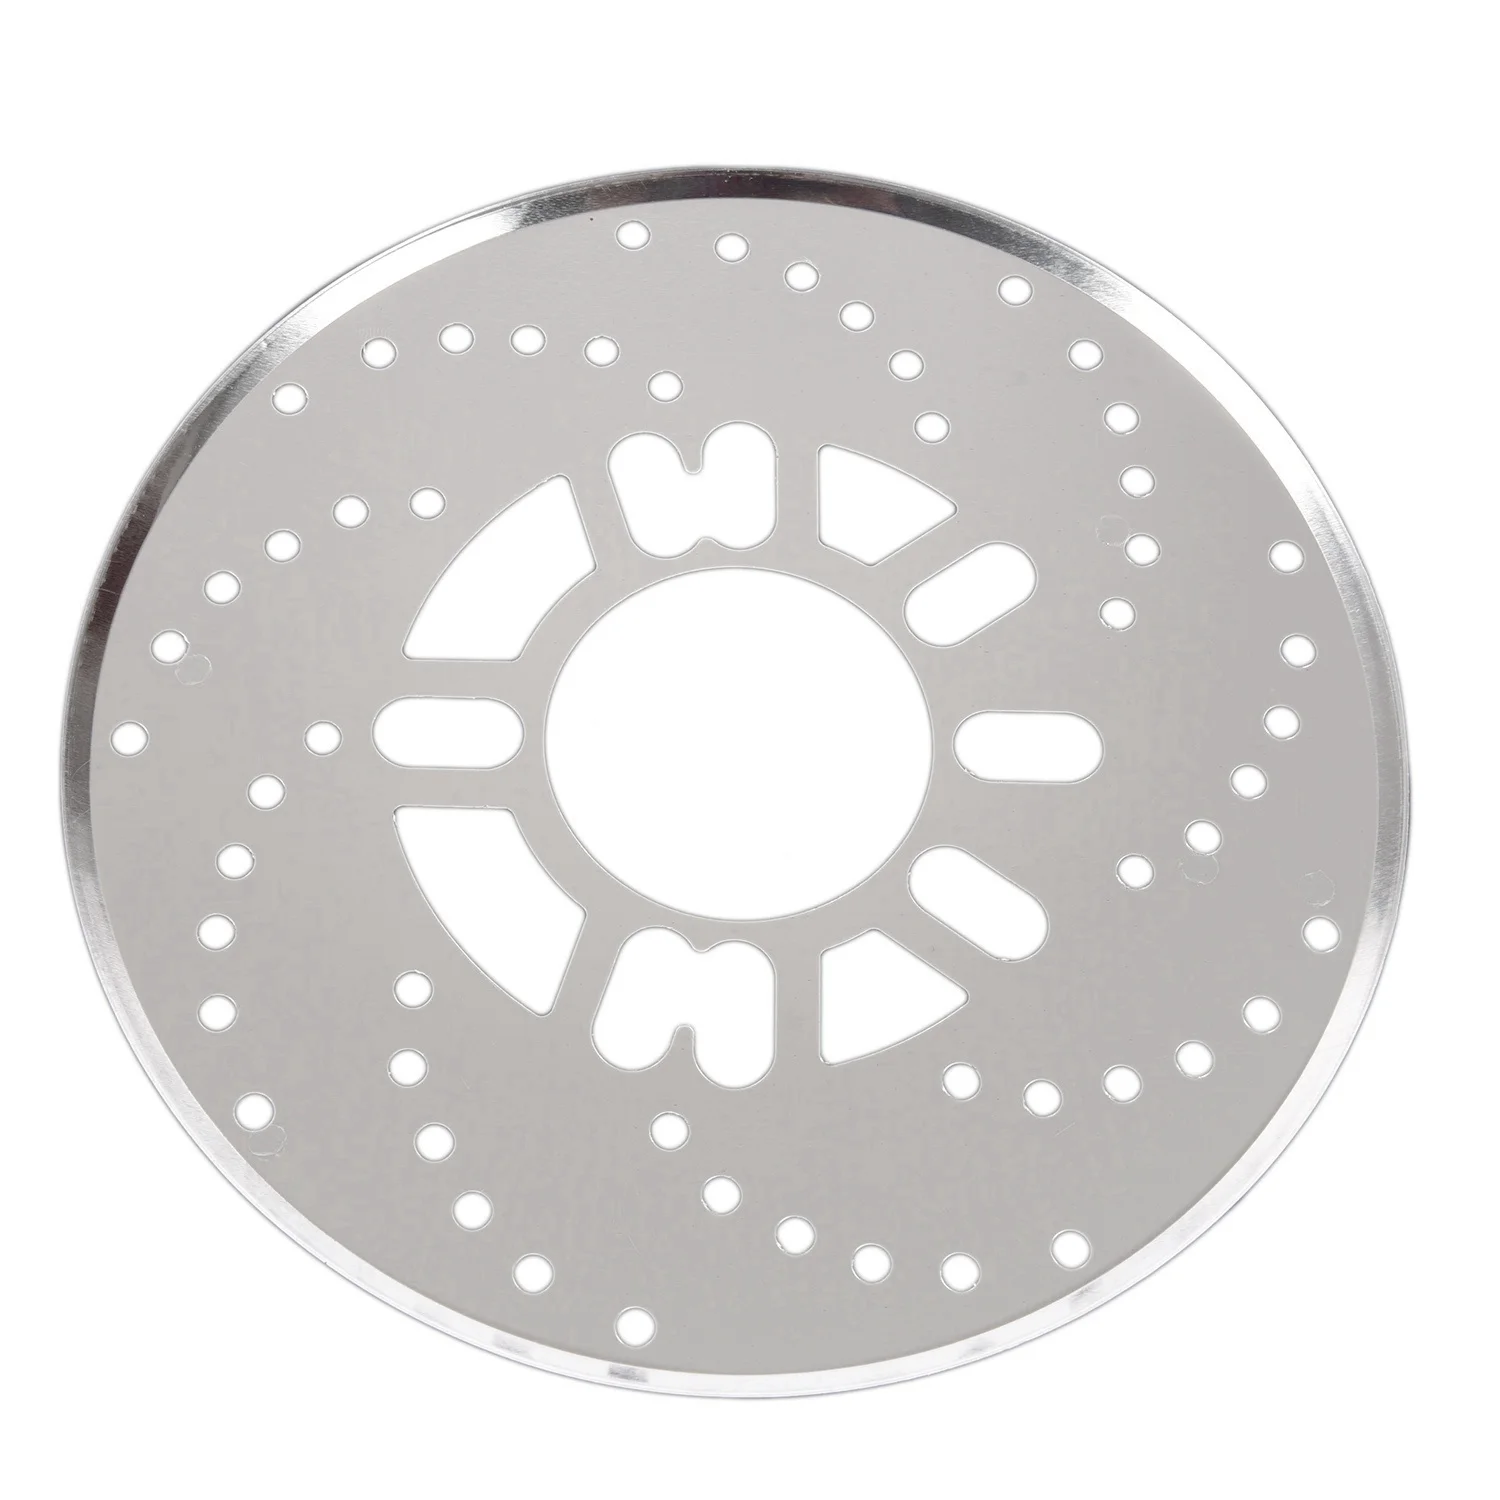 2x Универсальный Автомобильный дисковый тормозной чехол(серебристый